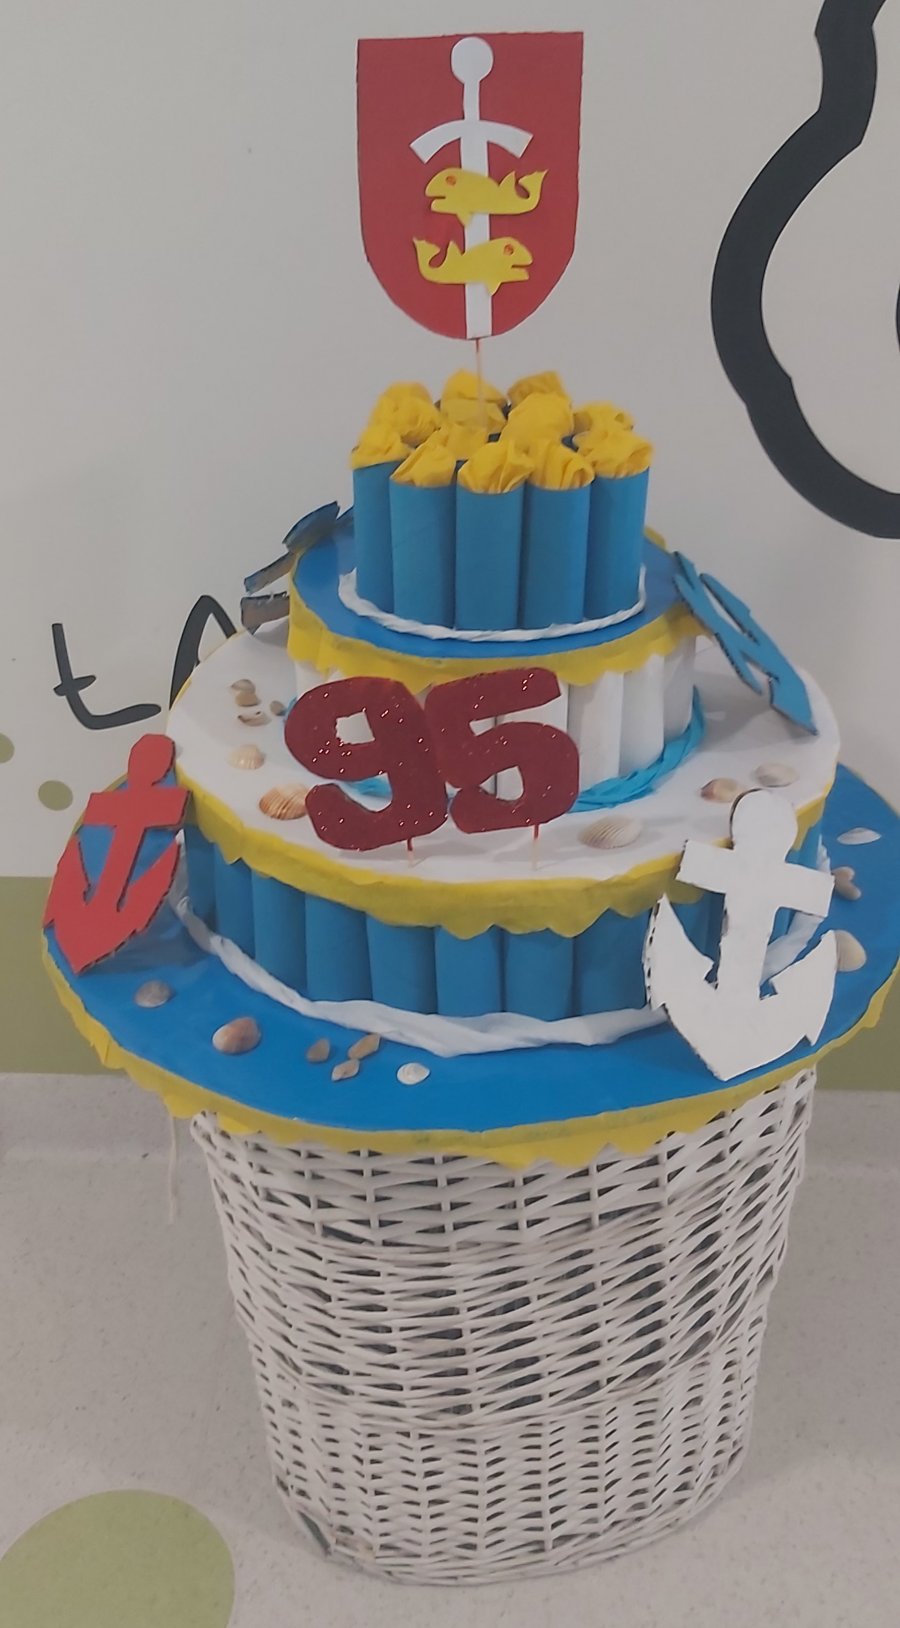 Mali marynarze z Przedszkola nr 58 przygotowali tort urodzinowy